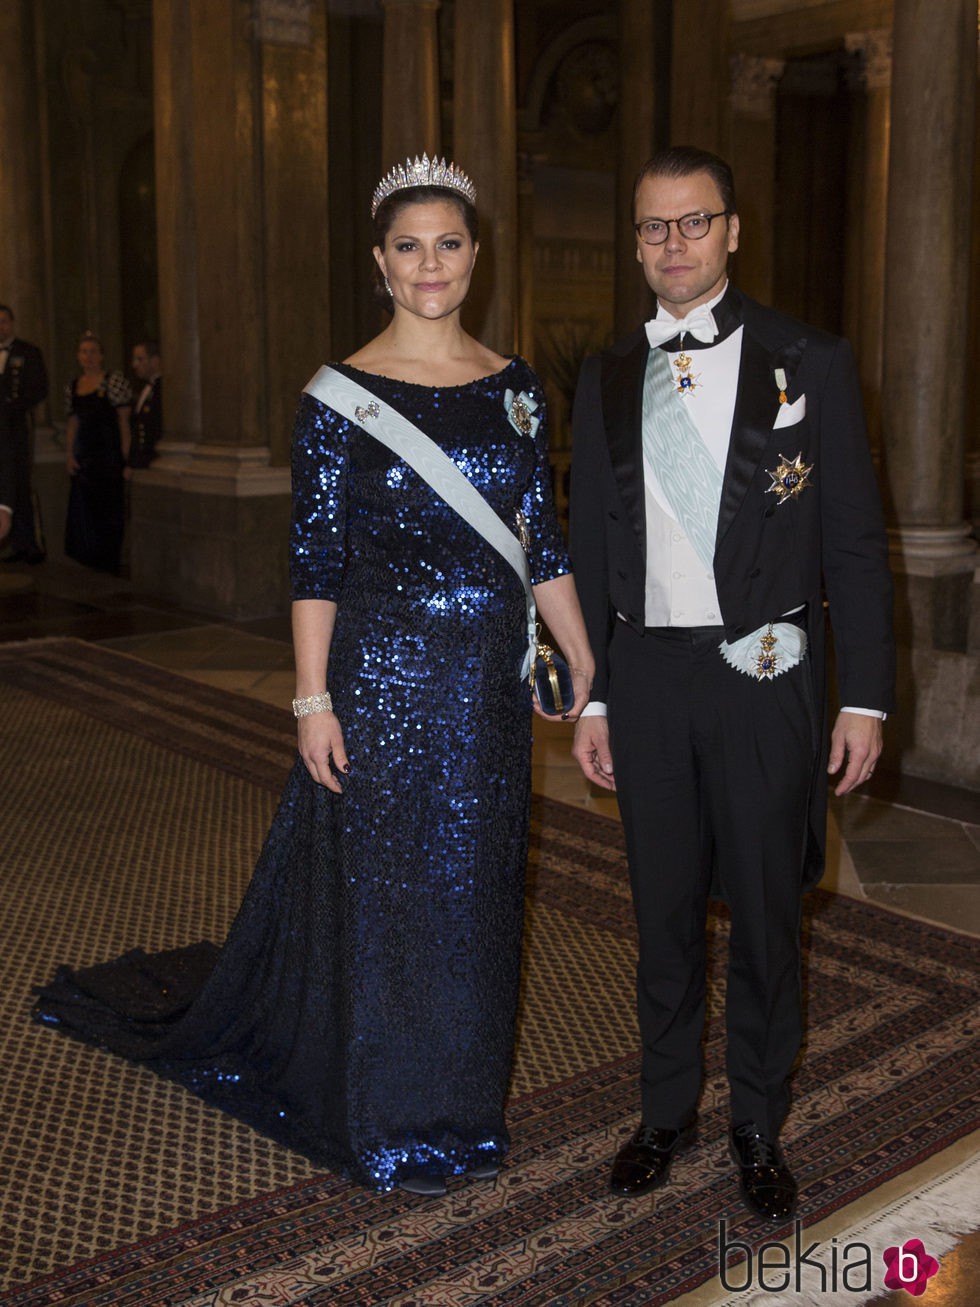 Princesa Victoria de Suecia y el Príncipe Daniel de Suecia en la gala a los premiados del Nobel 2015